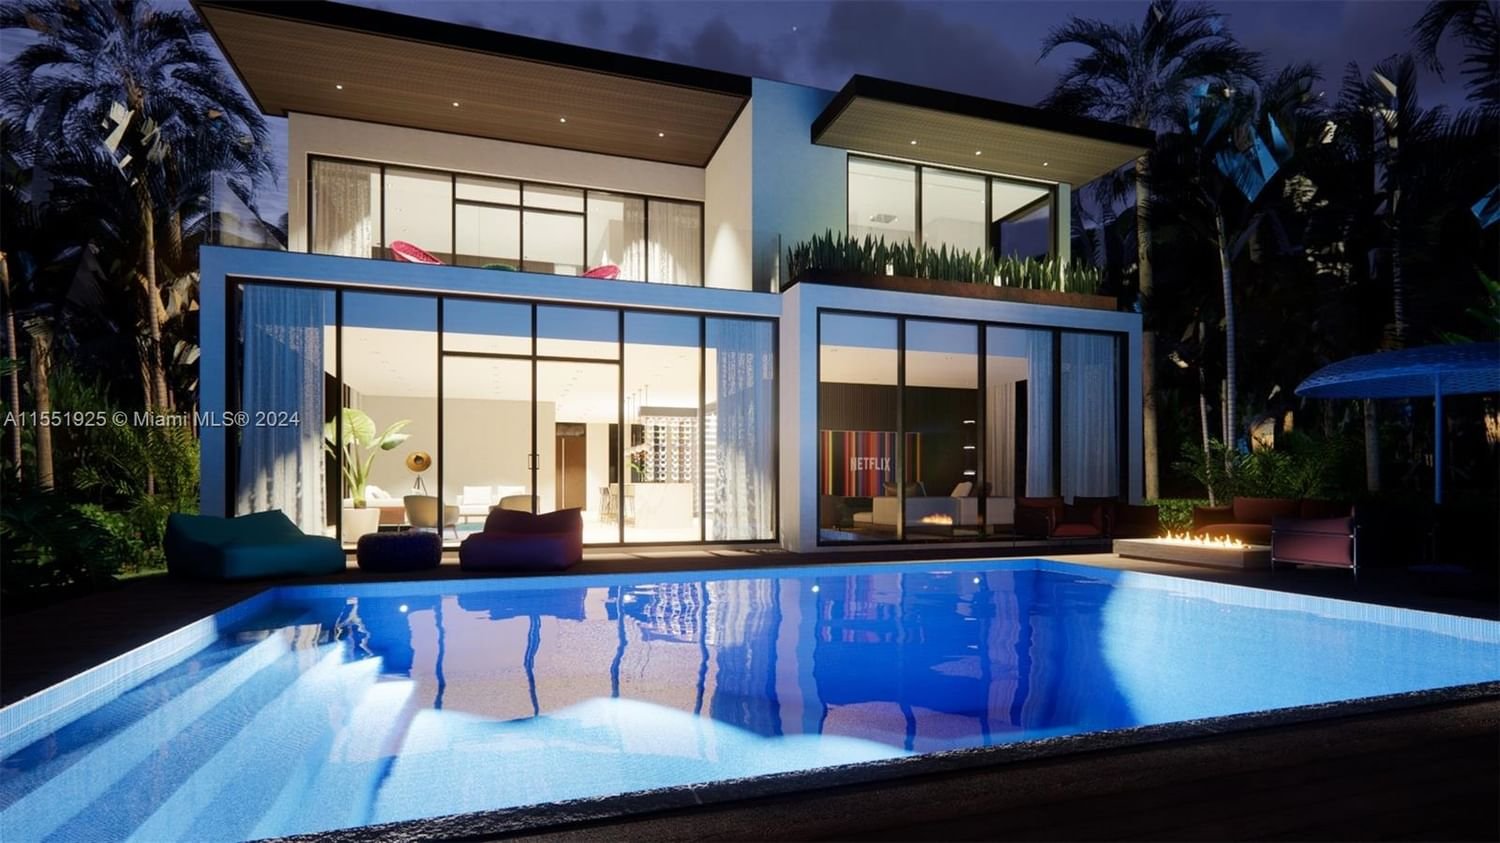 Real estate property located at 6020 alton, Miami-Dade County, LA GORCE GOLF SUB PB 14-43, Miami Beach, FL